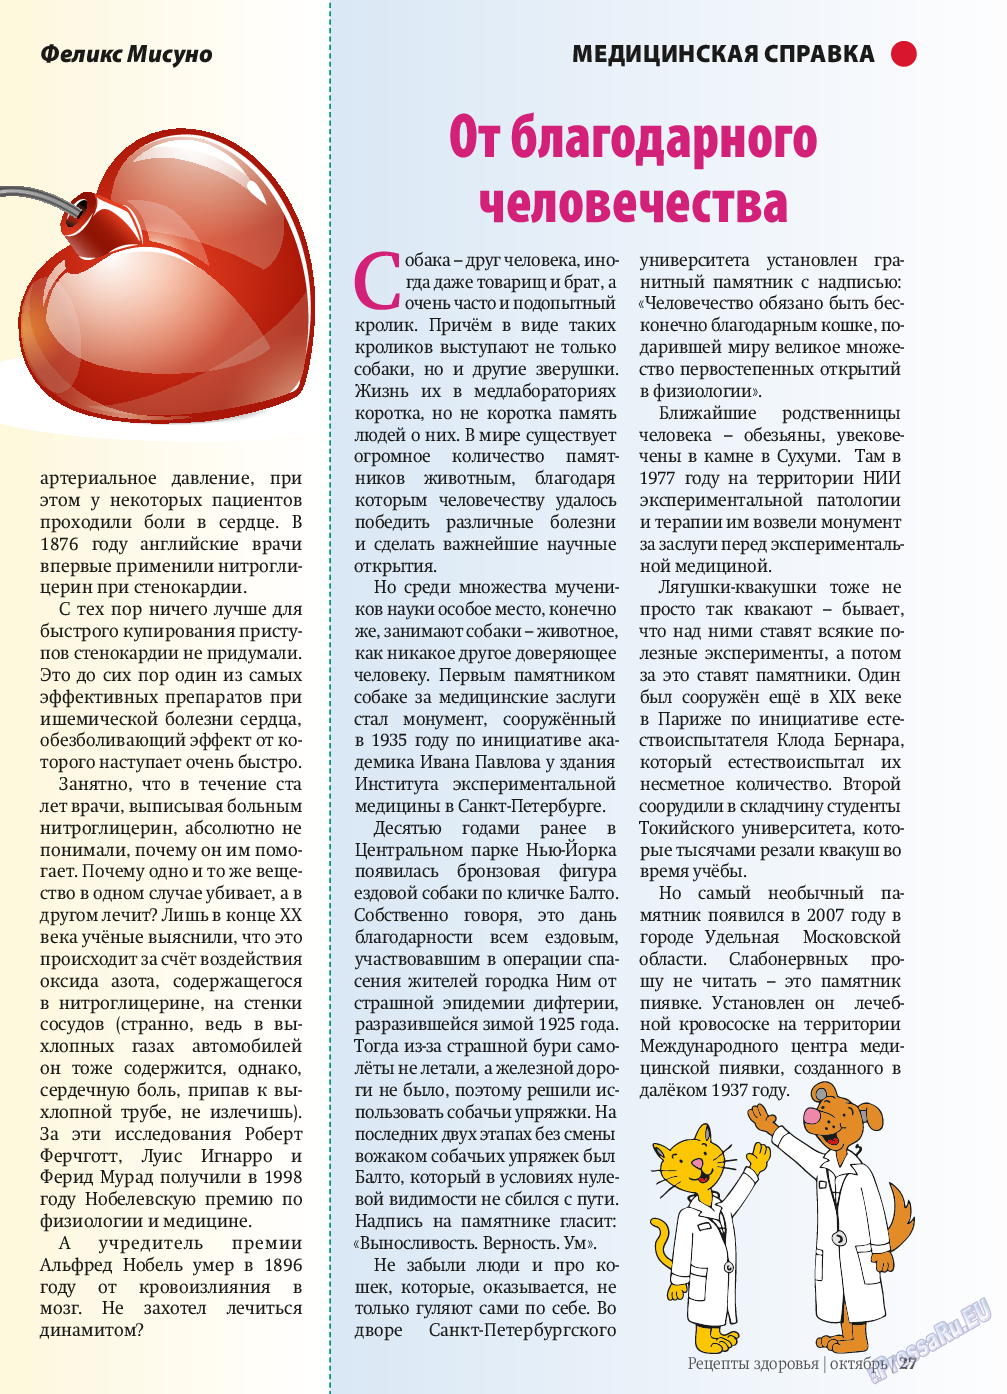 Рецепты здоровья, журнал. 2013 №10 стр.27